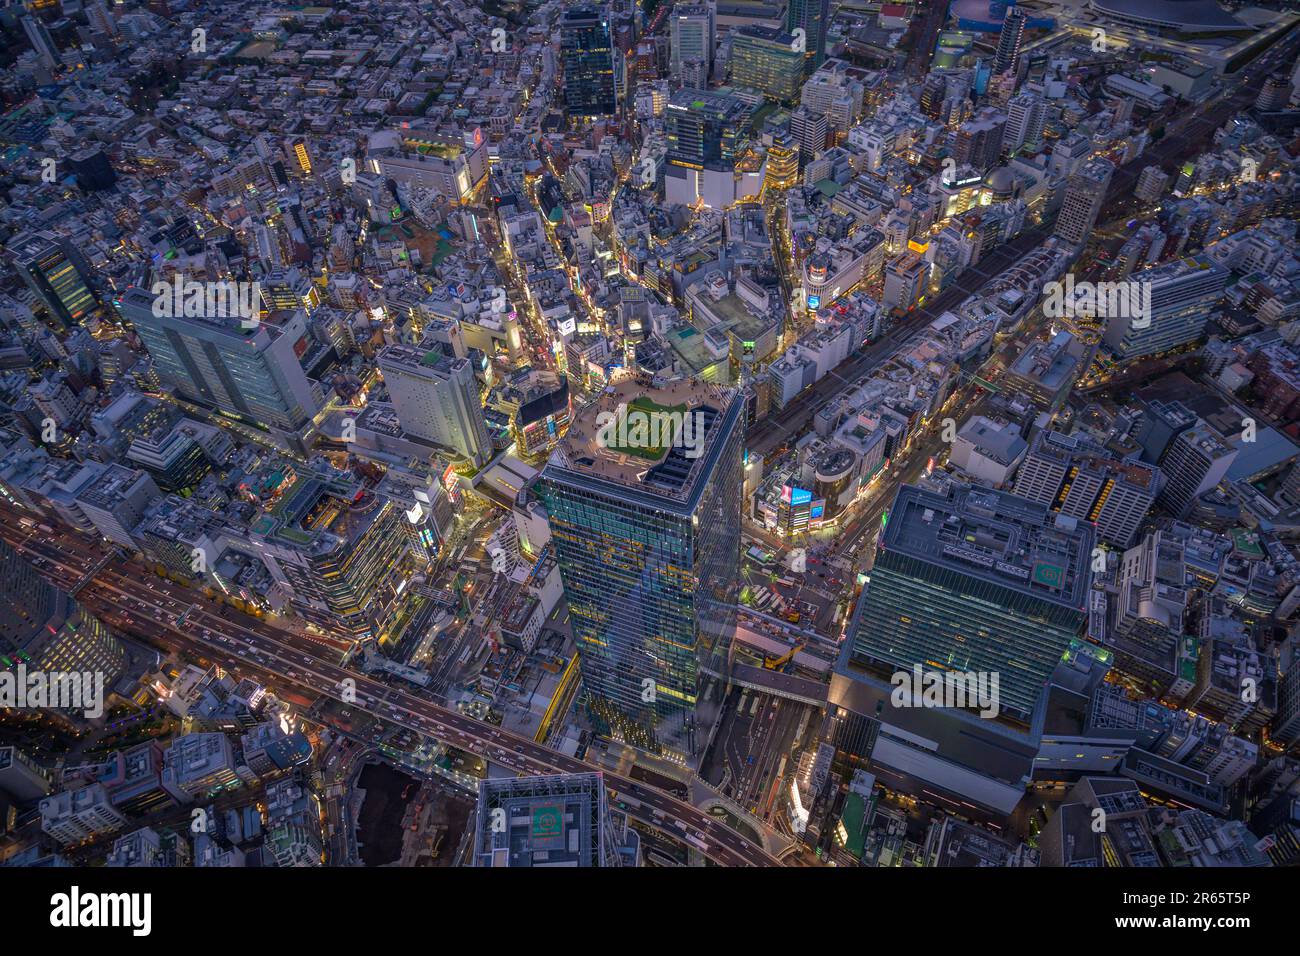 Aerial View of Shibuya Scramble Square at Night Stock Photo